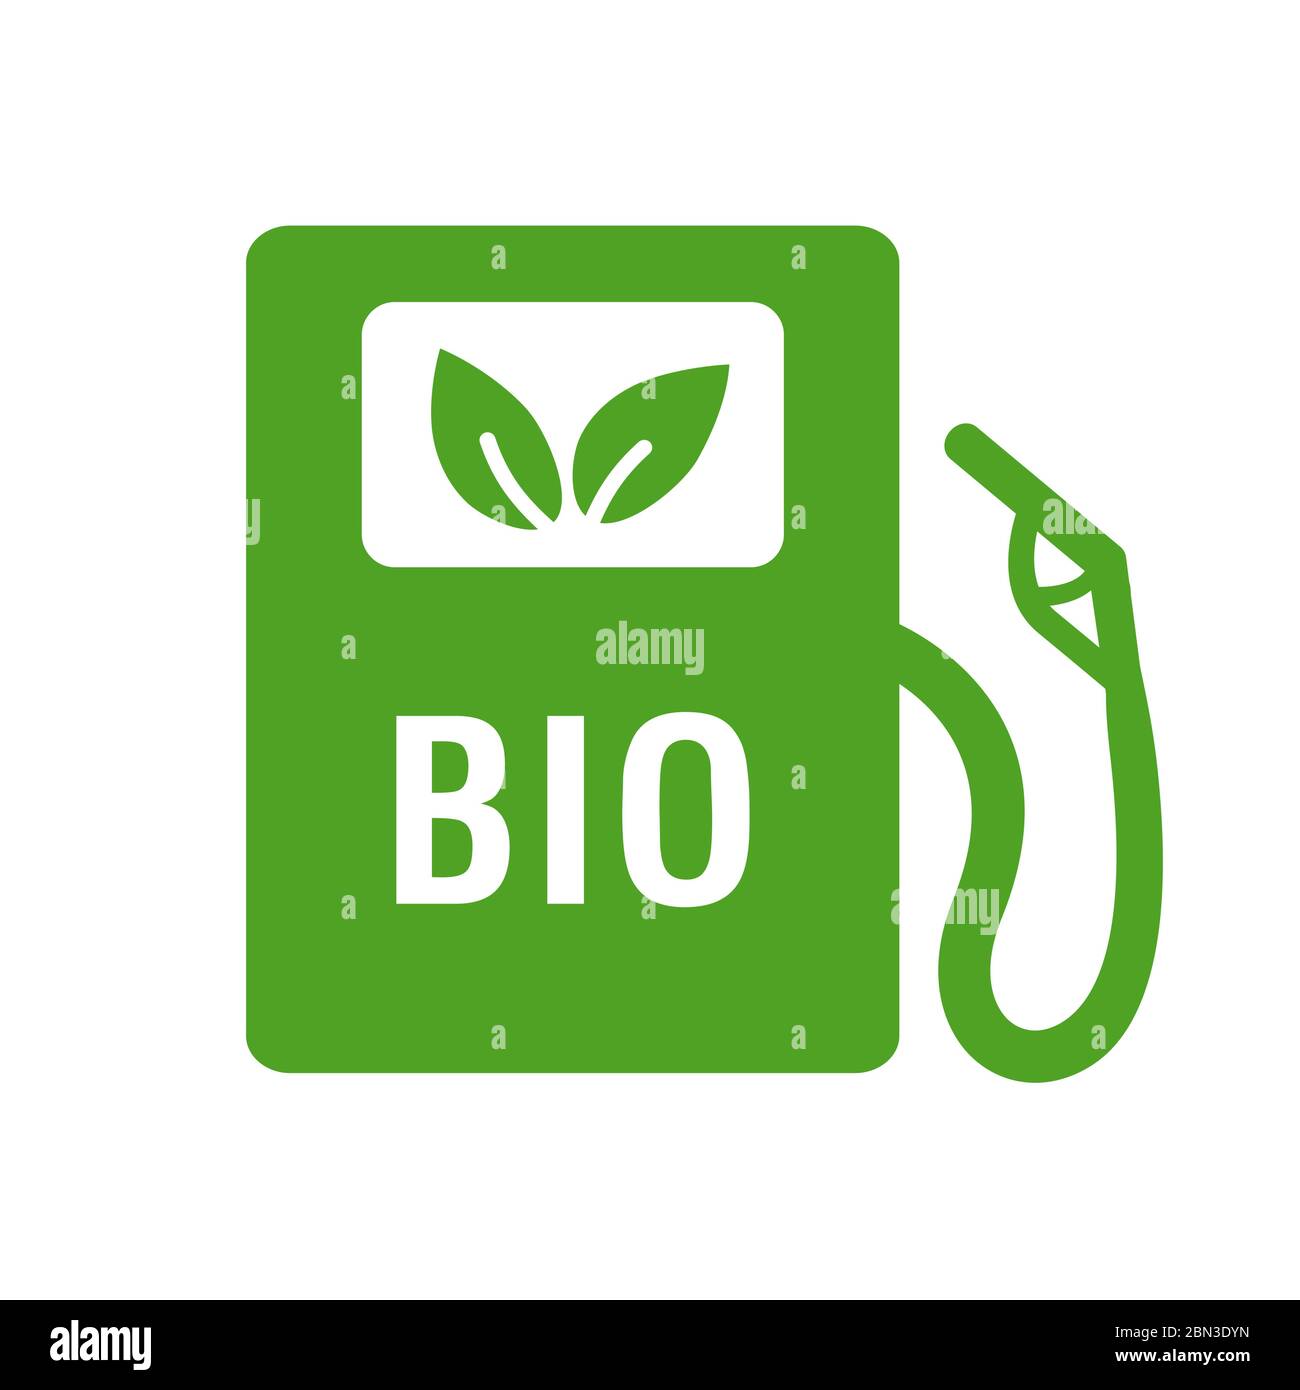 Stazione di gas per biocarburanti. Icona Vector - carburante alternativo ecologico. Isolato su sfondo bianco. Illustrazione Vettoriale